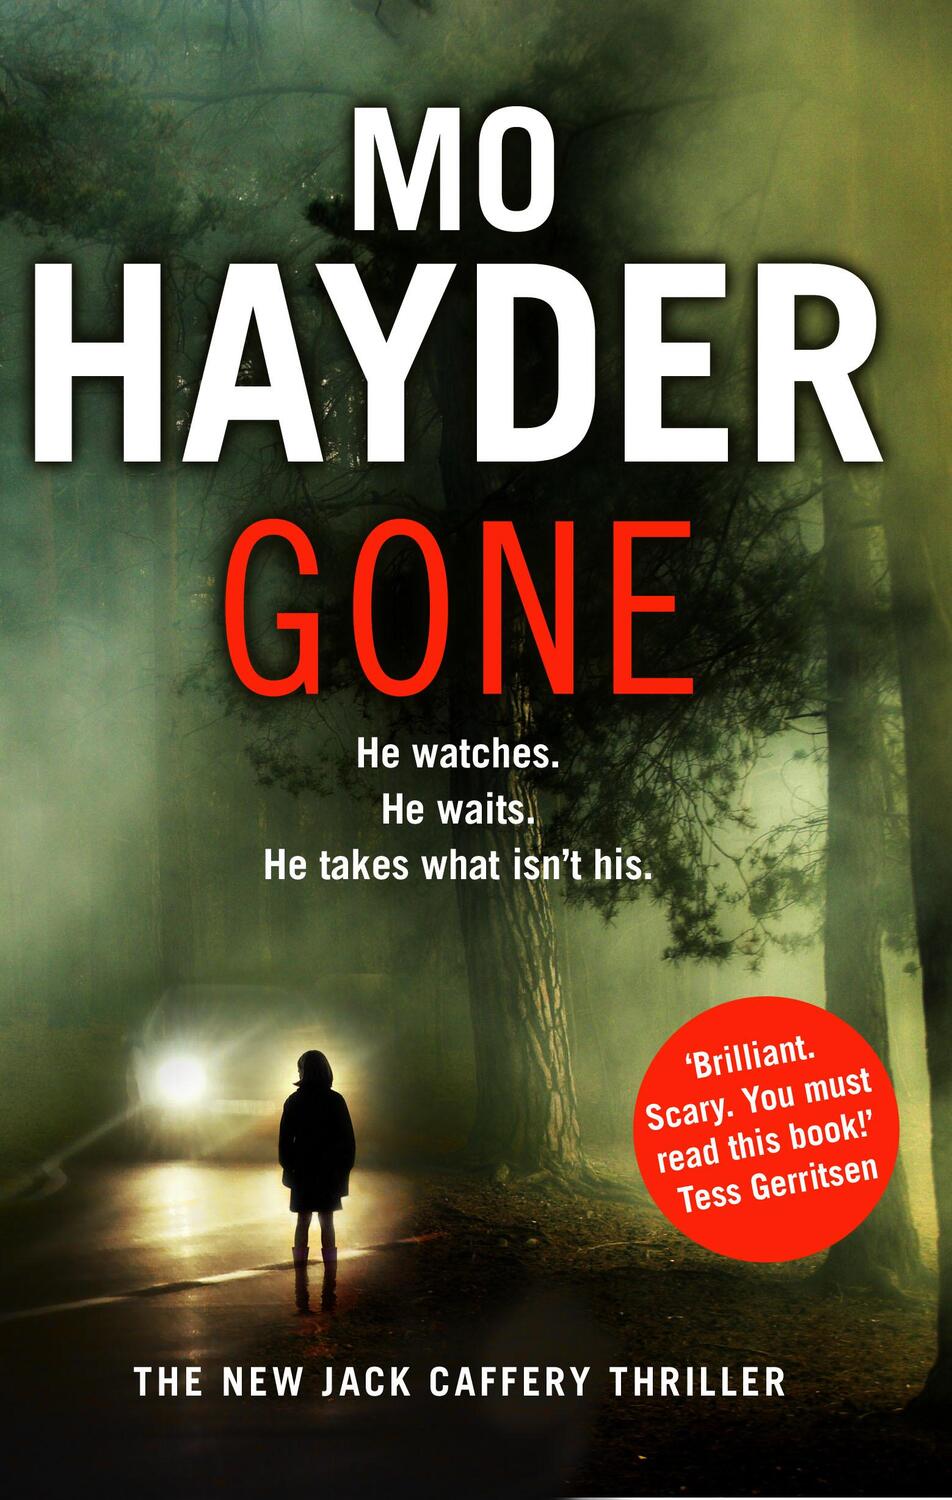 Cover: 9780553824339 | Hayder, M: Gone | Jack Caffery series 5 | Mo Hayder | Jack Caffery